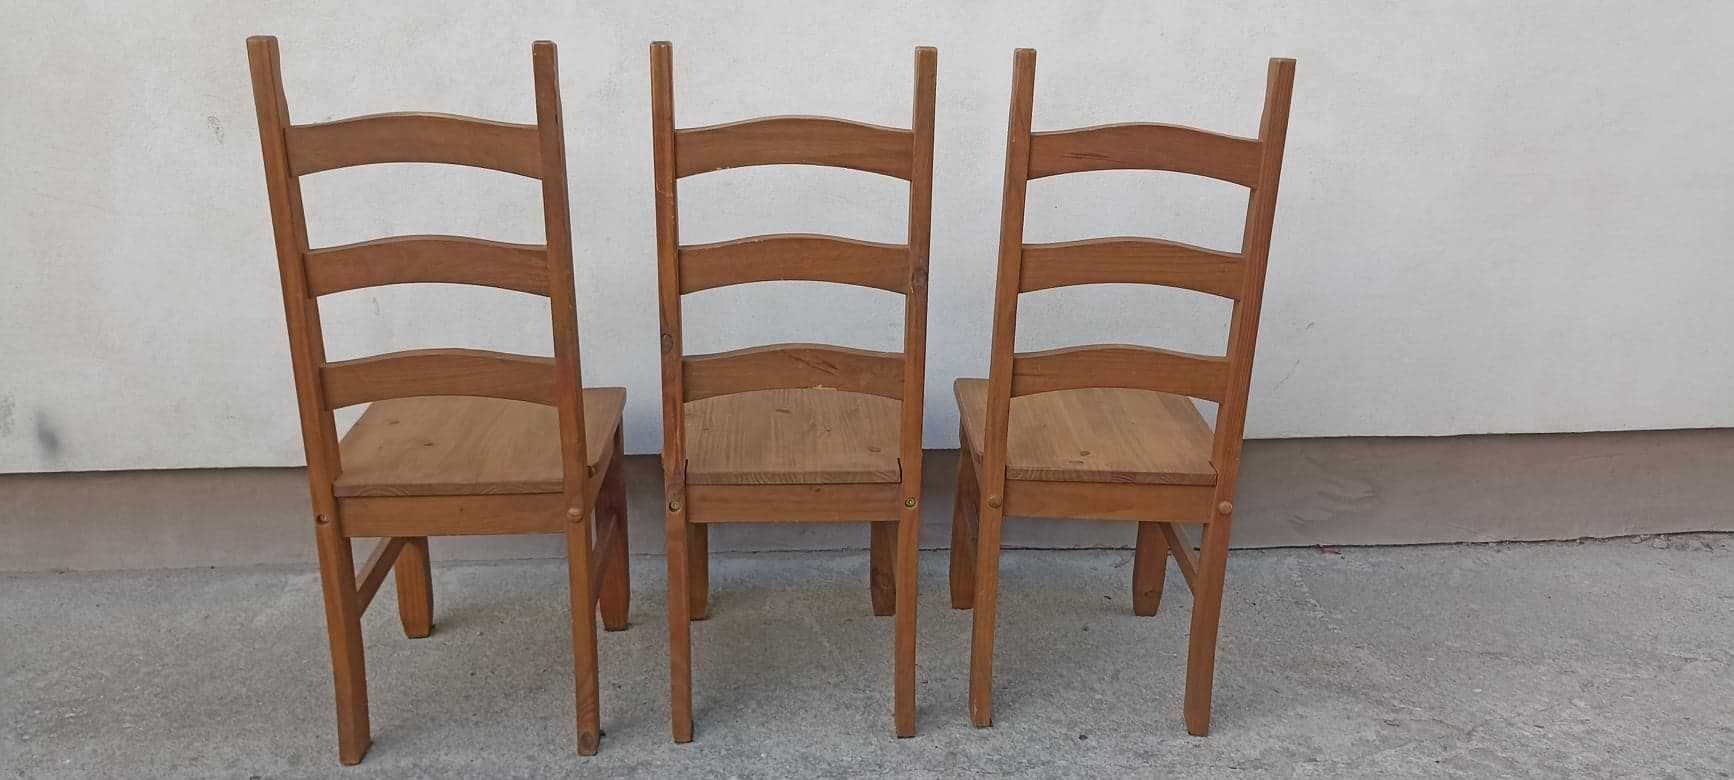 scaune din lemn in stare buna si masa din lemn EXTENSIBILA